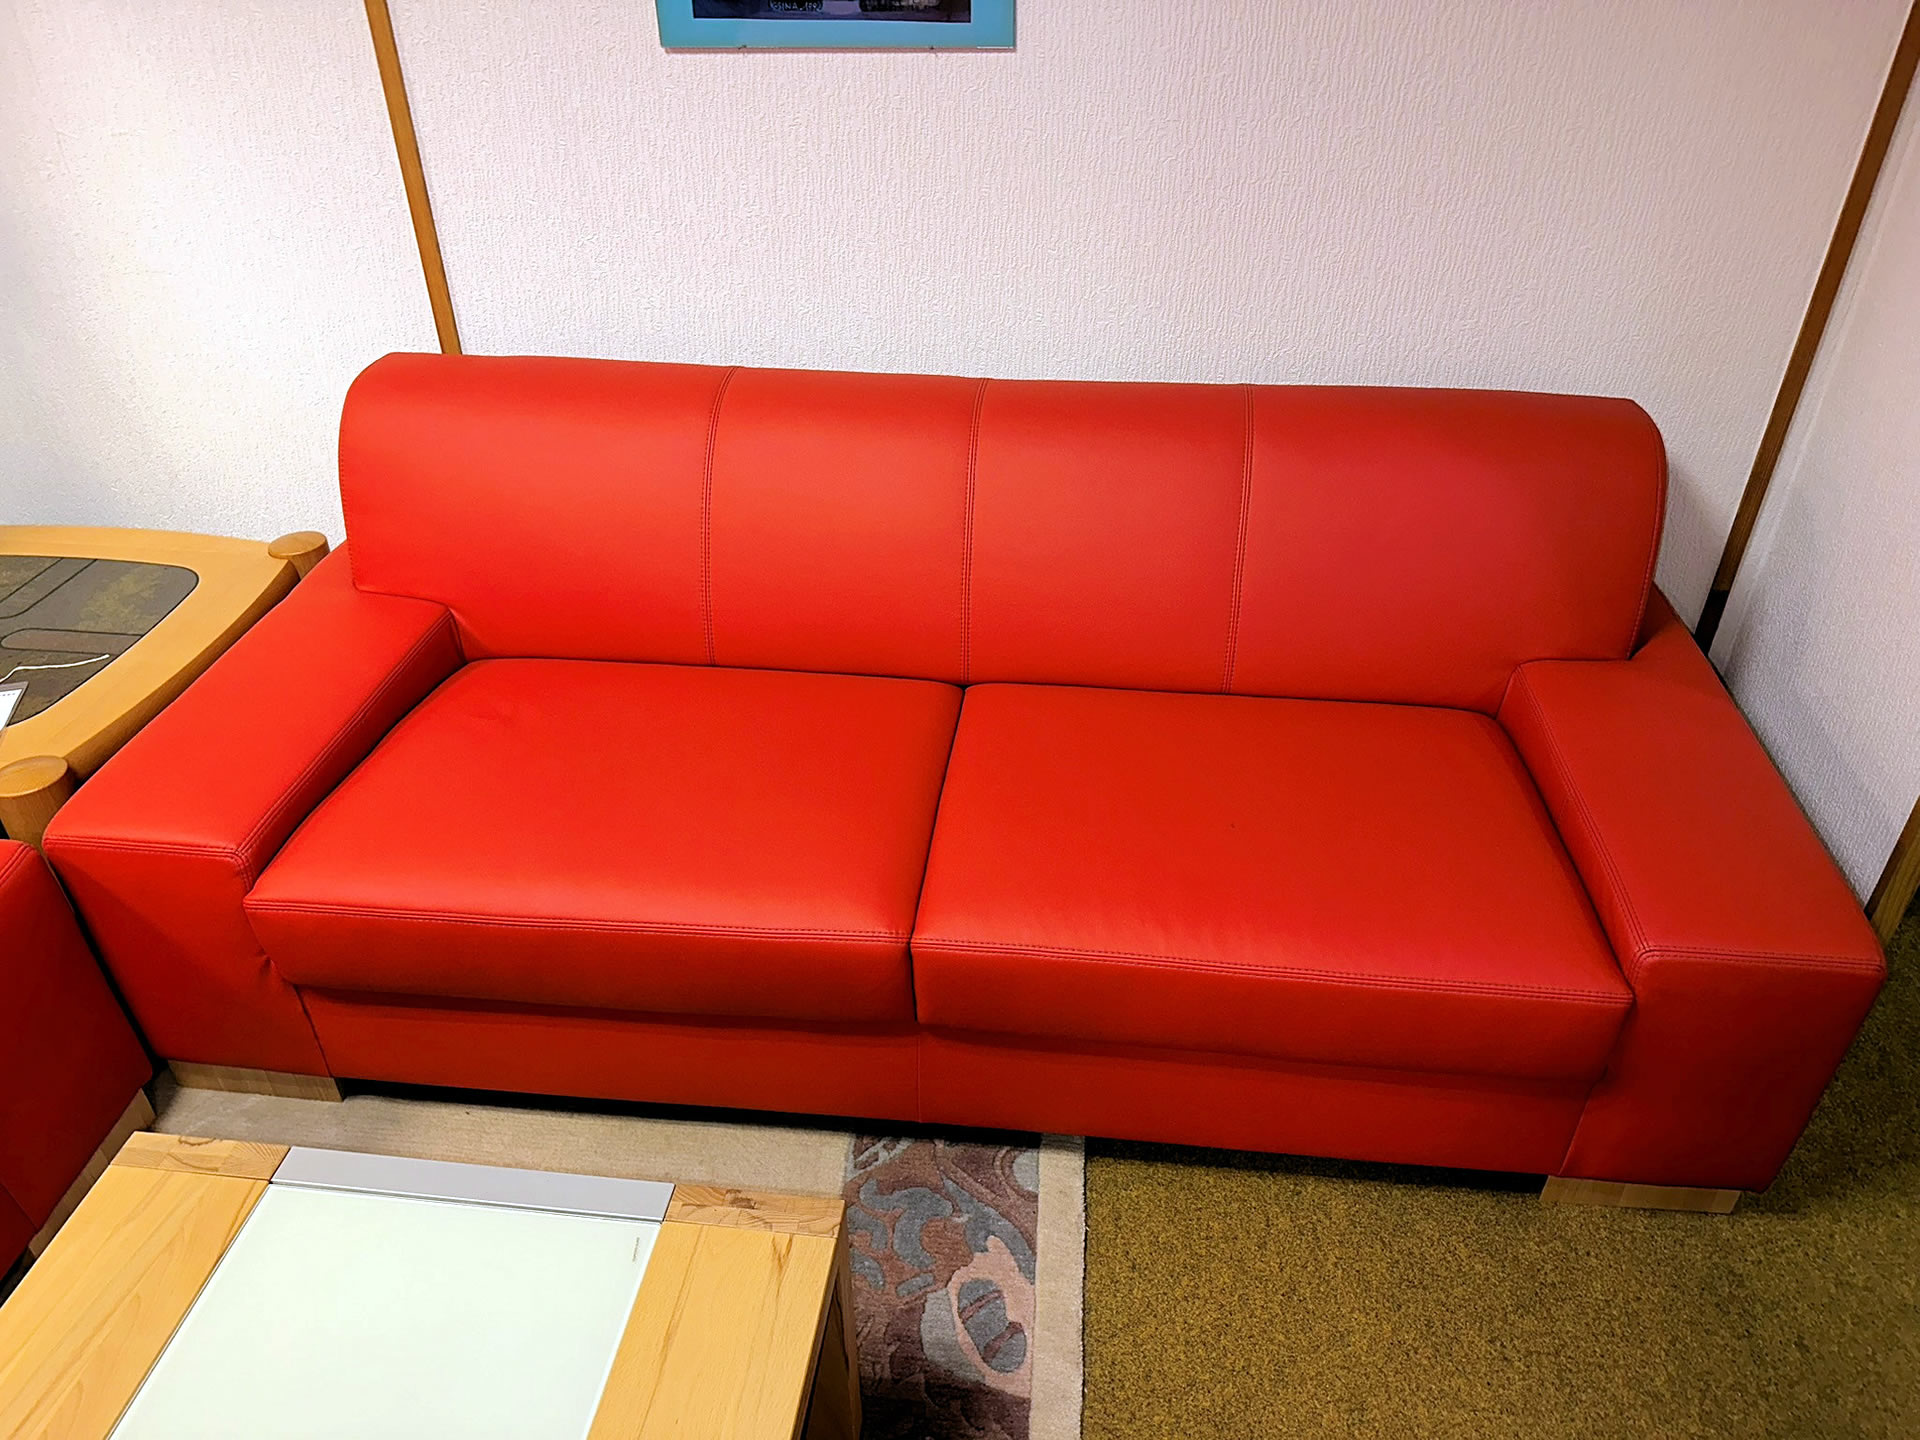 Couchgruppe - Lederlook rot